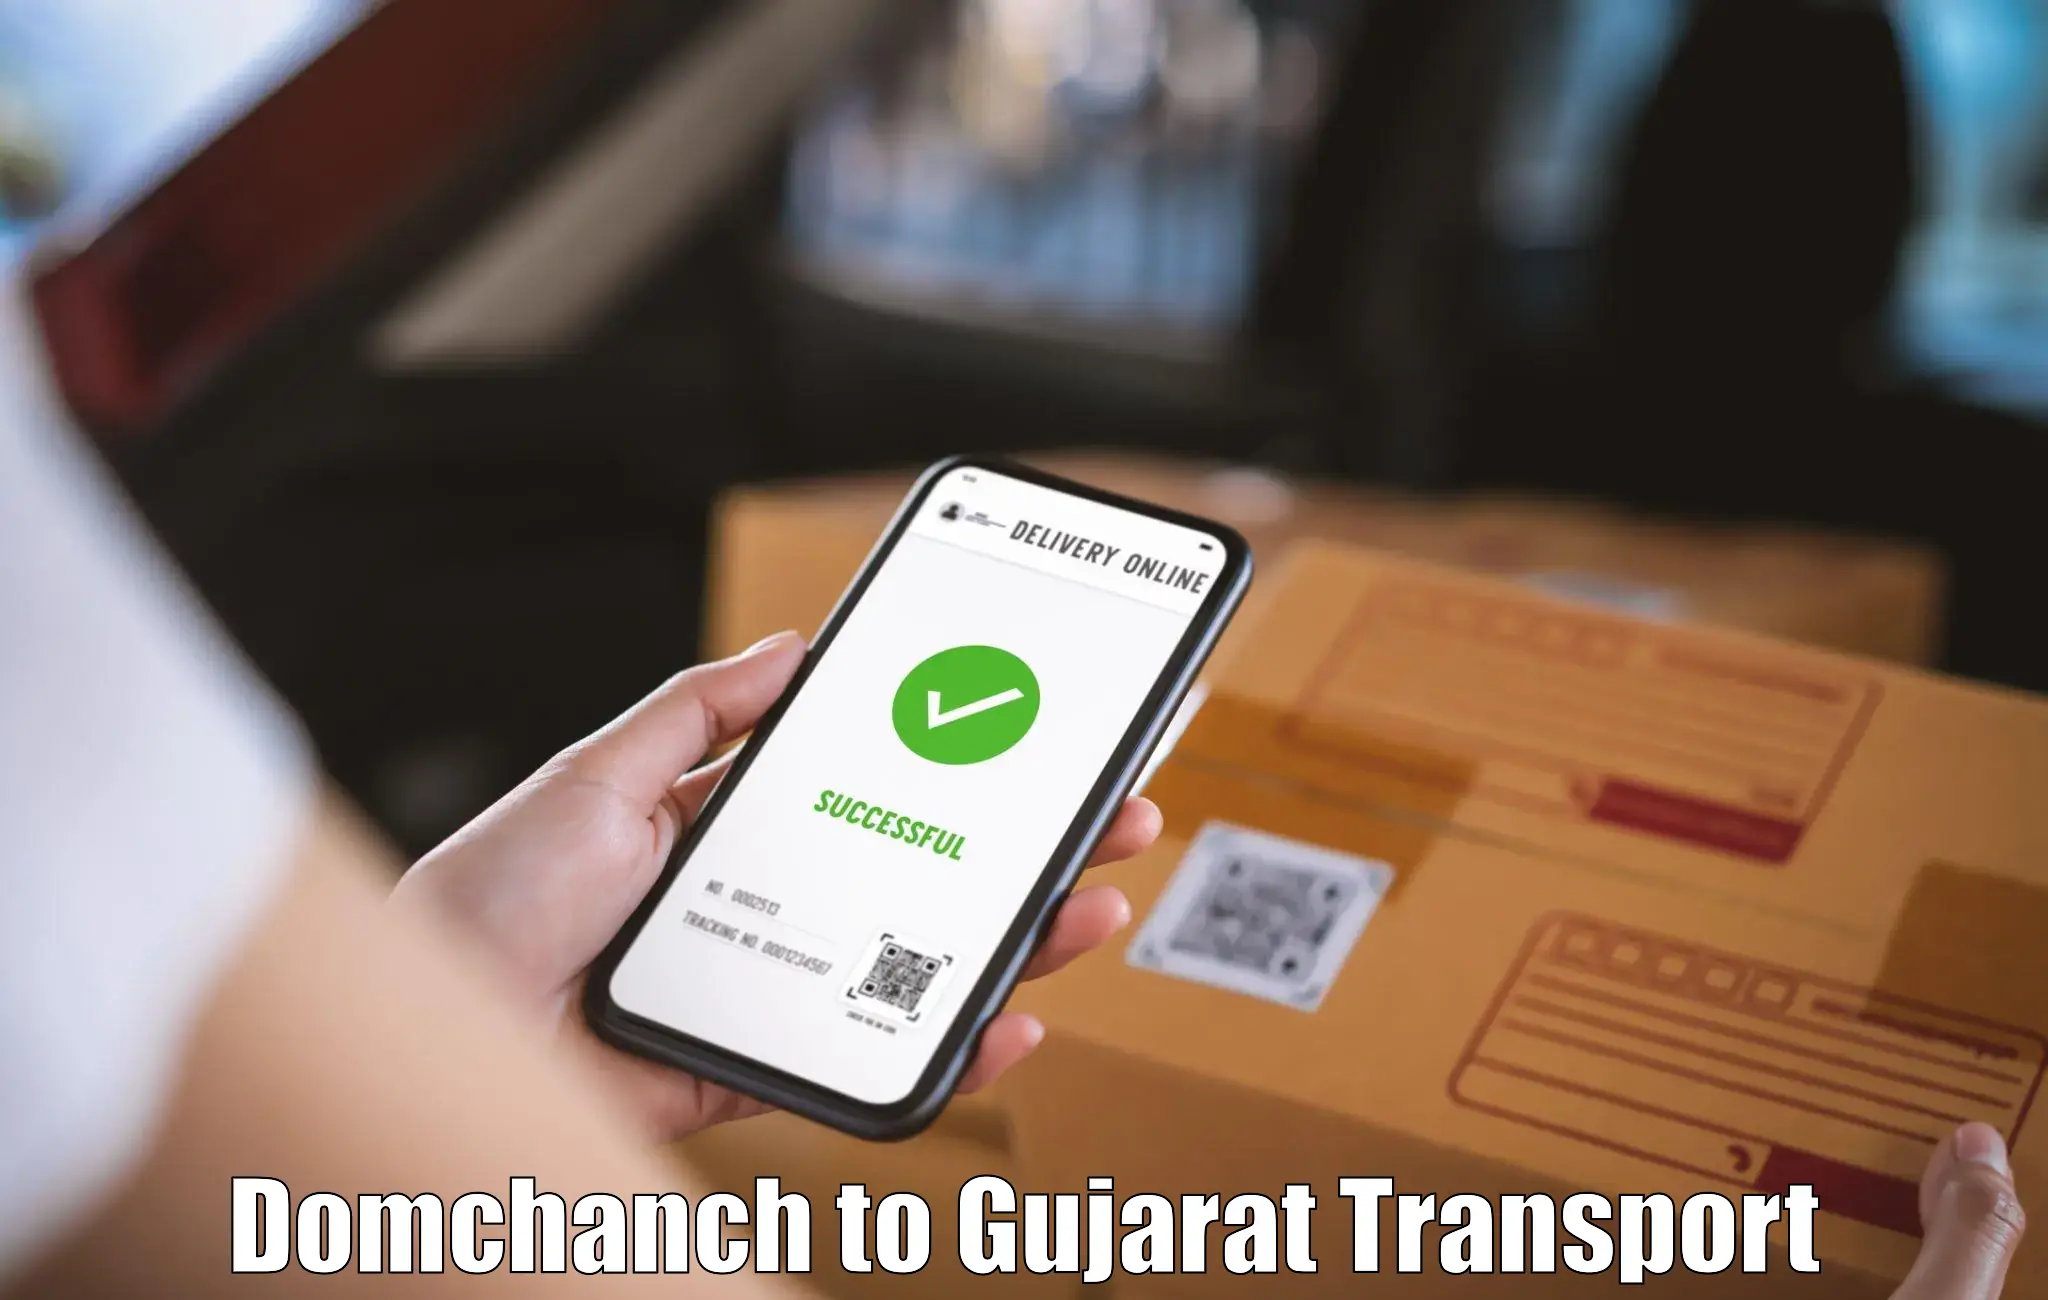 Goods delivery service Domchanch to Gandhinagar